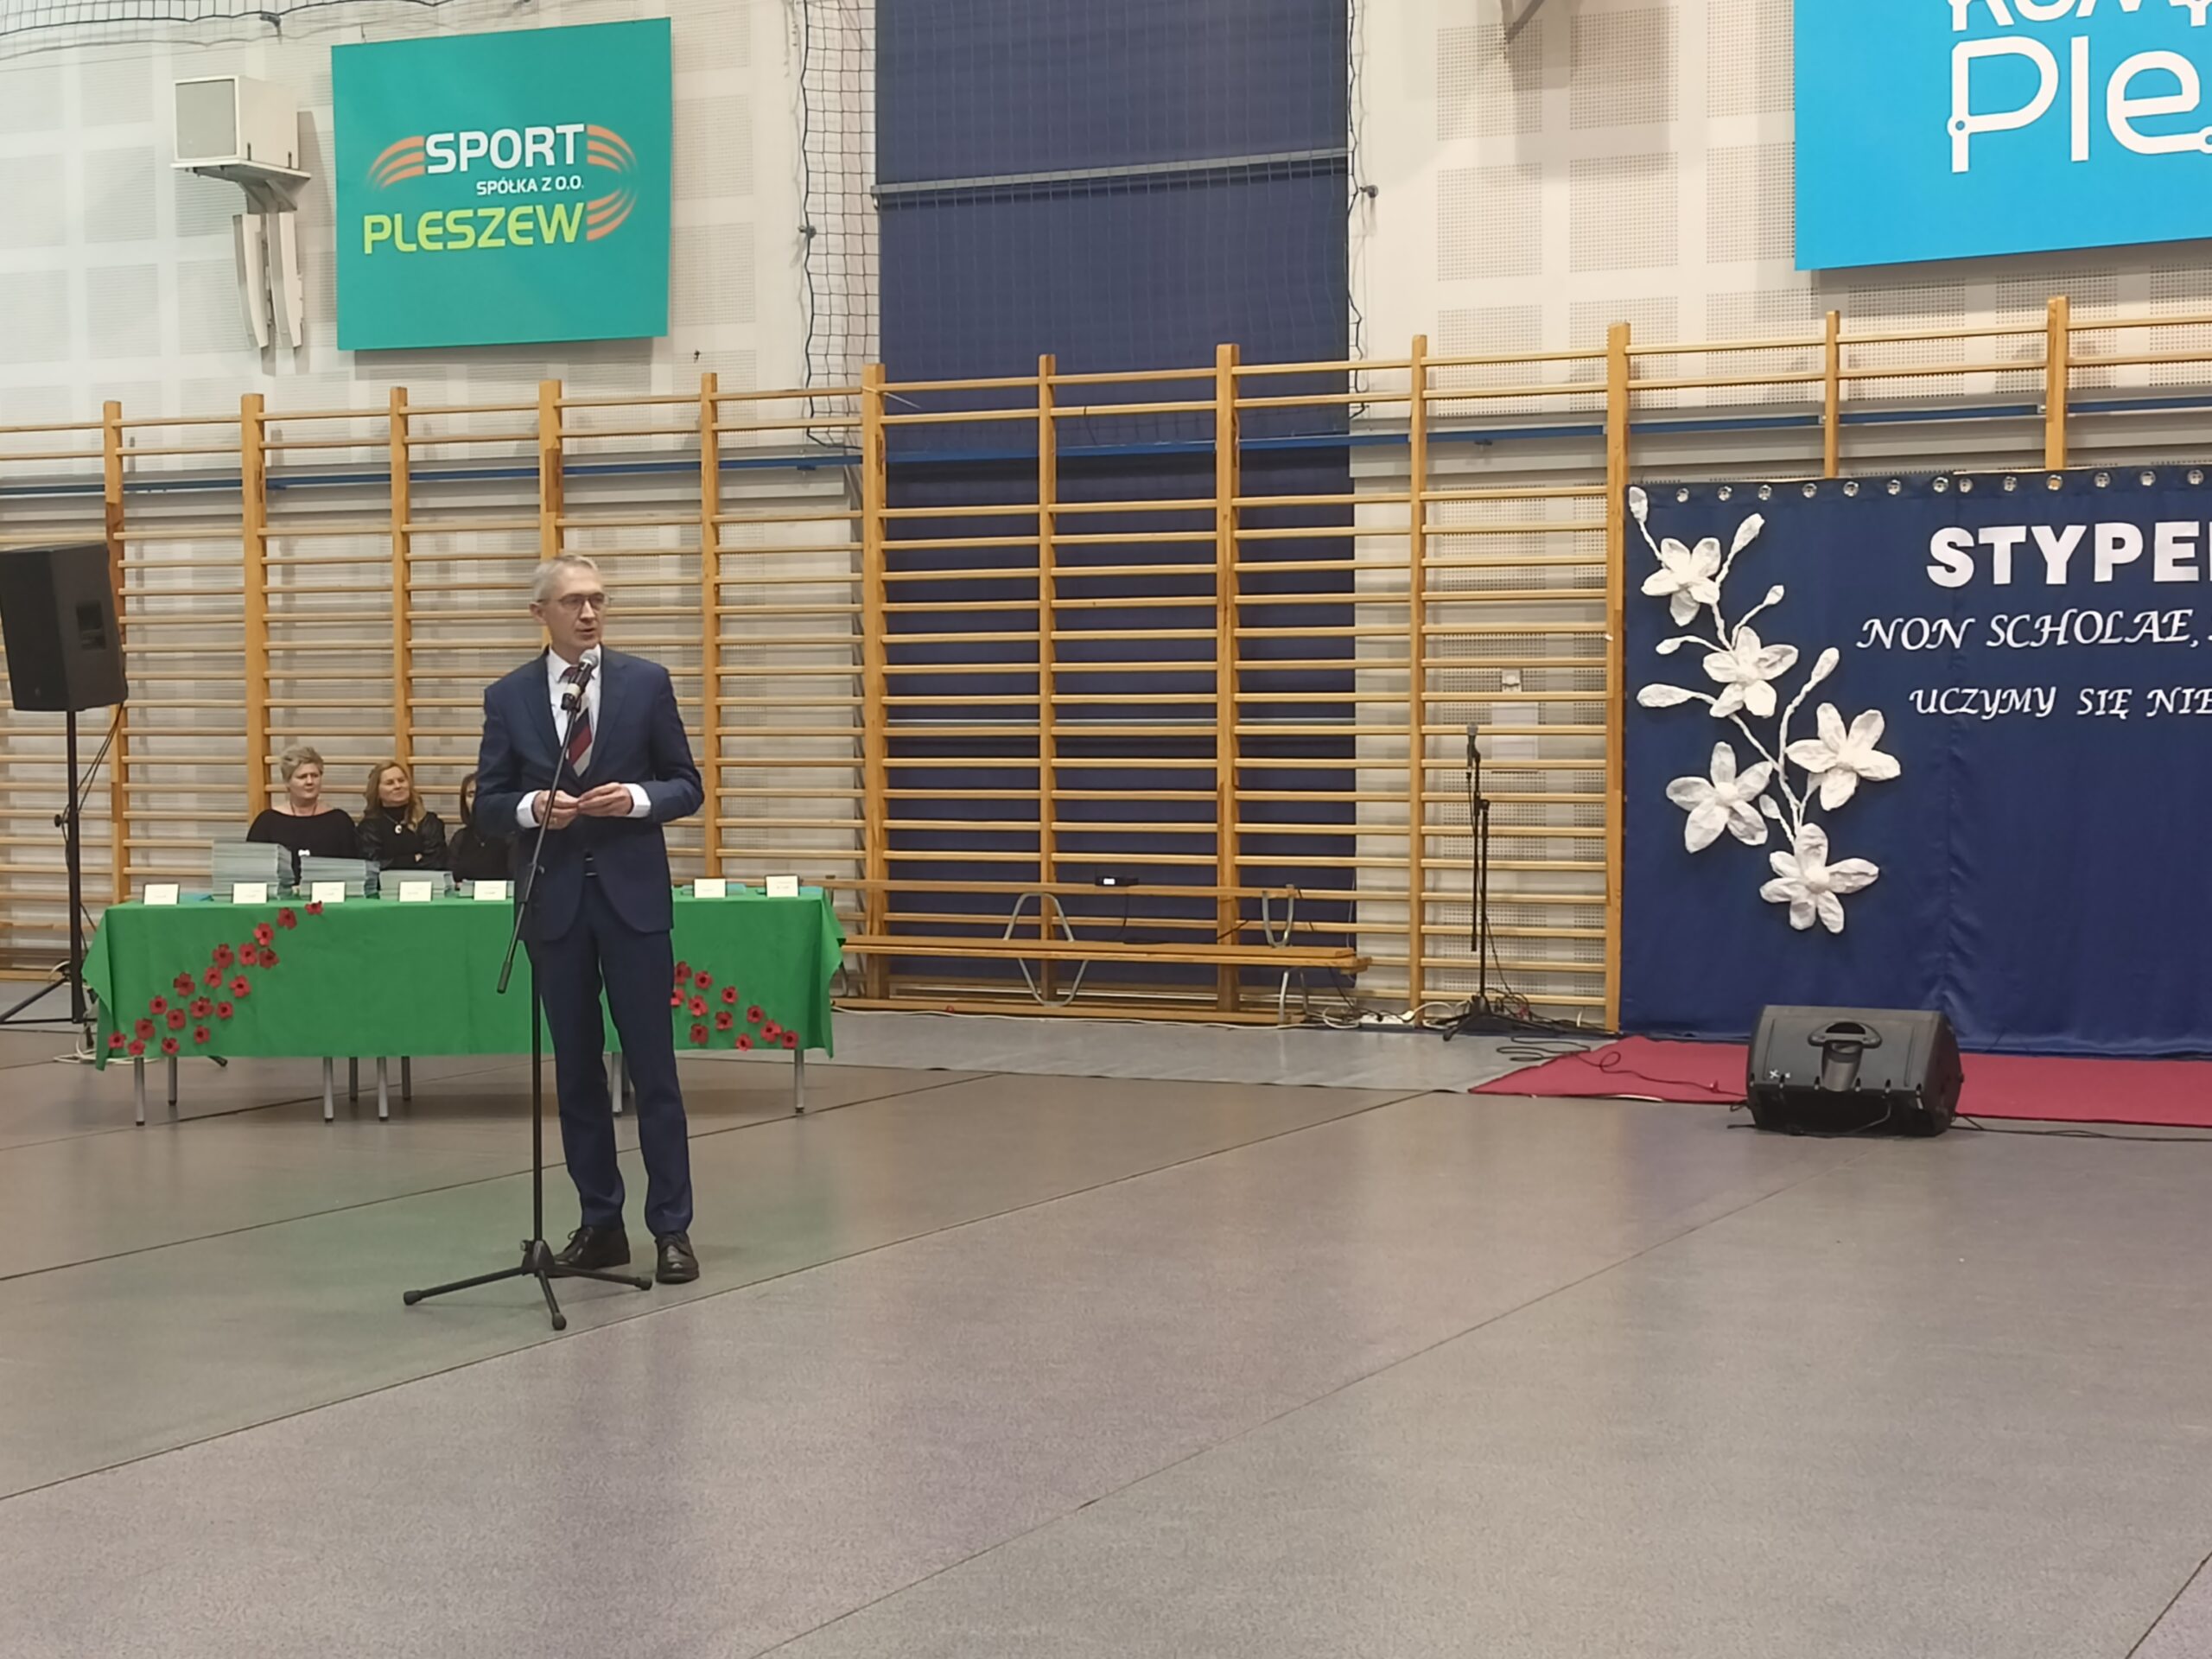 Przemówienie Burmistrza MiG Pleszew podczas uroczystości wręczenie stypendiów uczniom ze szkół MiG Pleszew